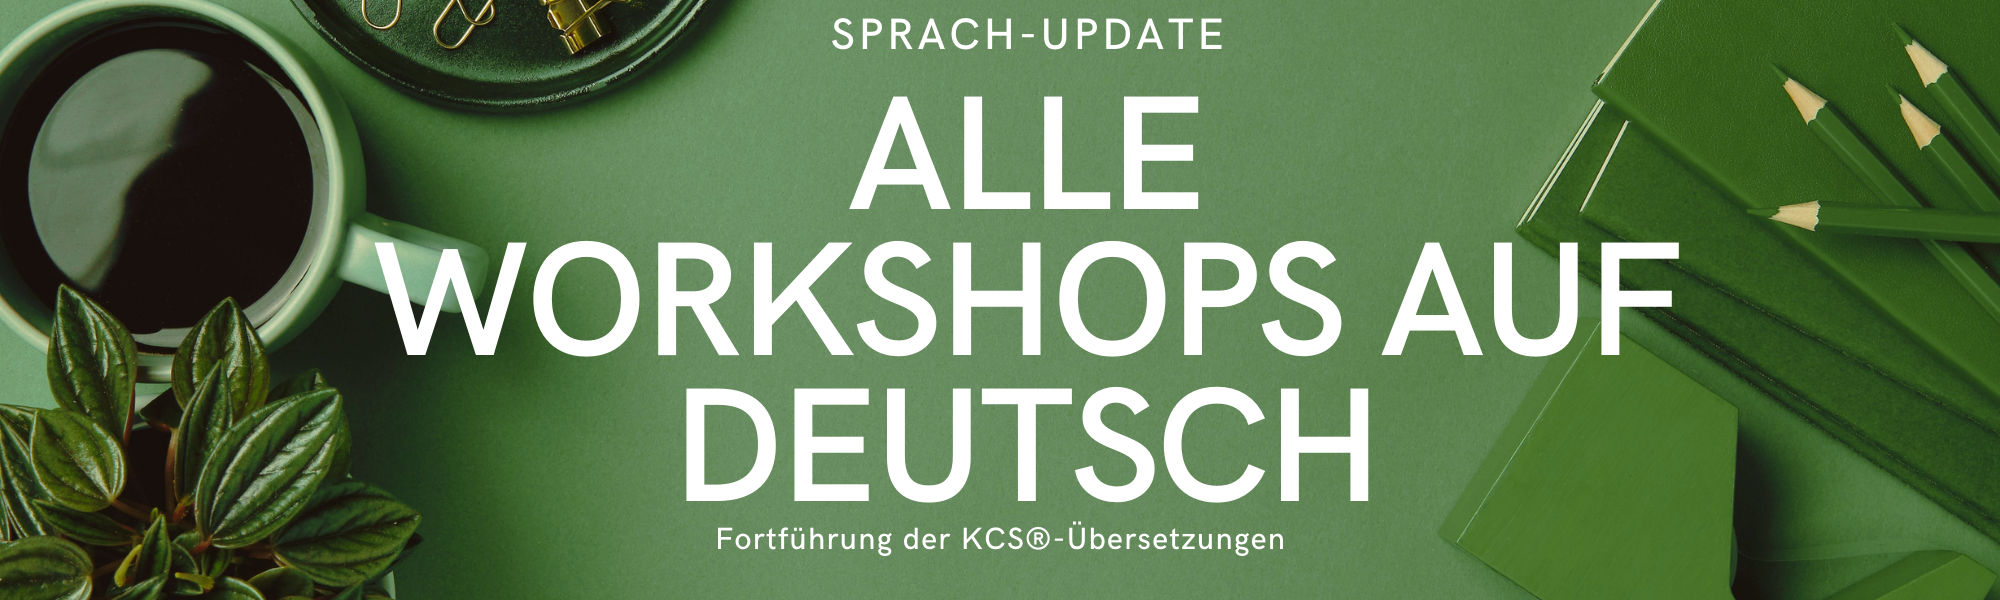 Alle unsere Workshops gibt es inzwischen auf Deutsch!